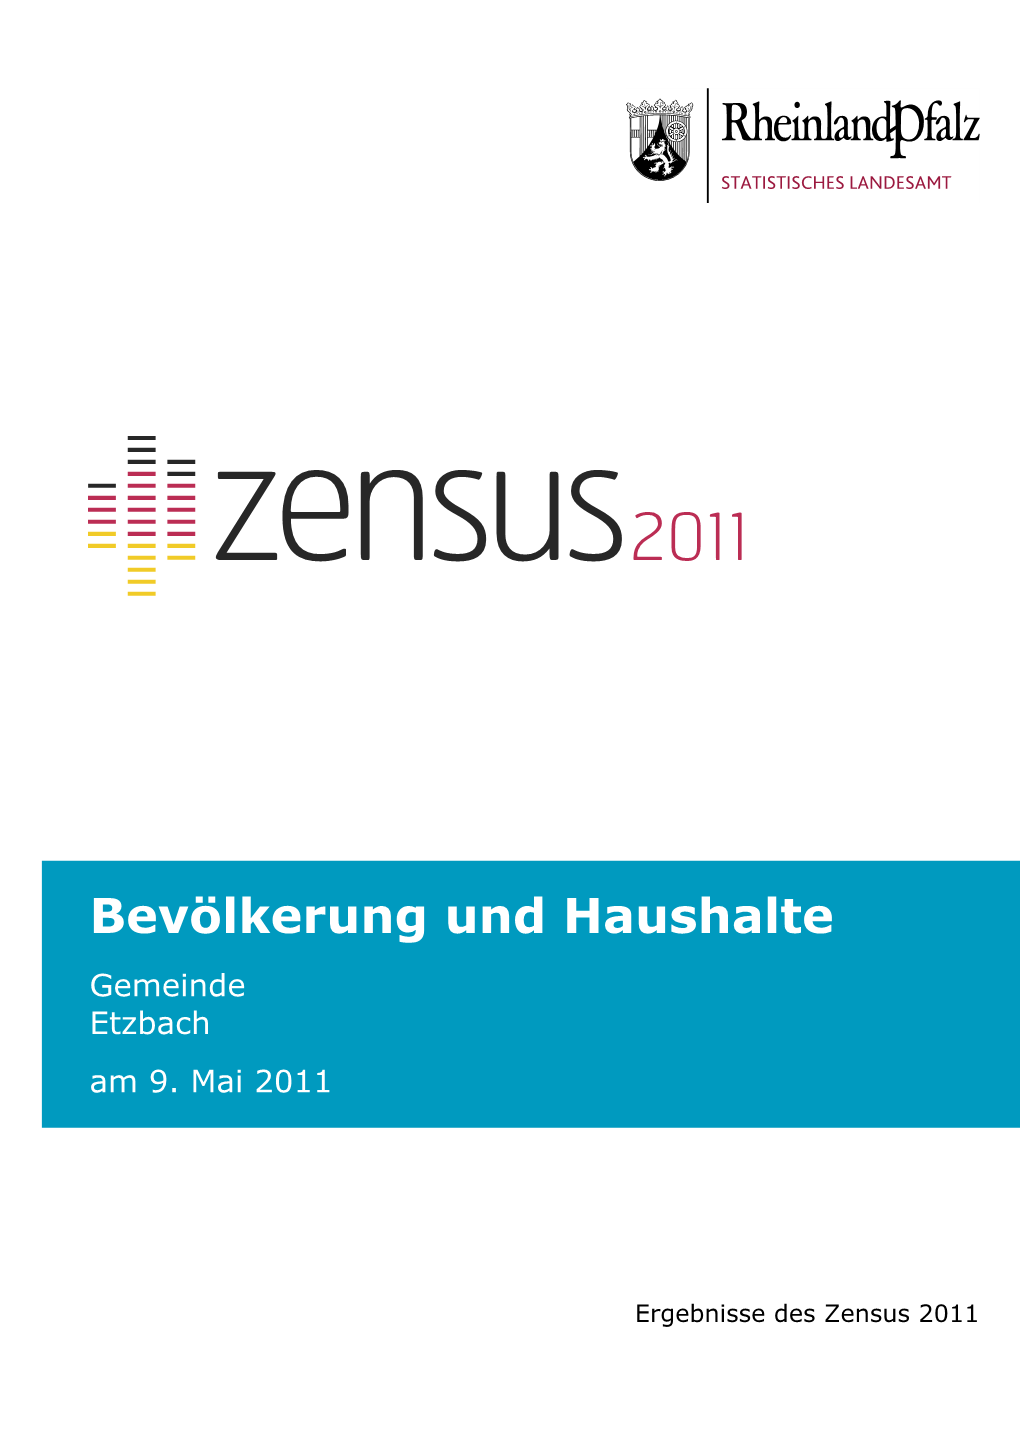 Bevölkerung Und Haushalte Am 9. Mai 2011, Etzbach